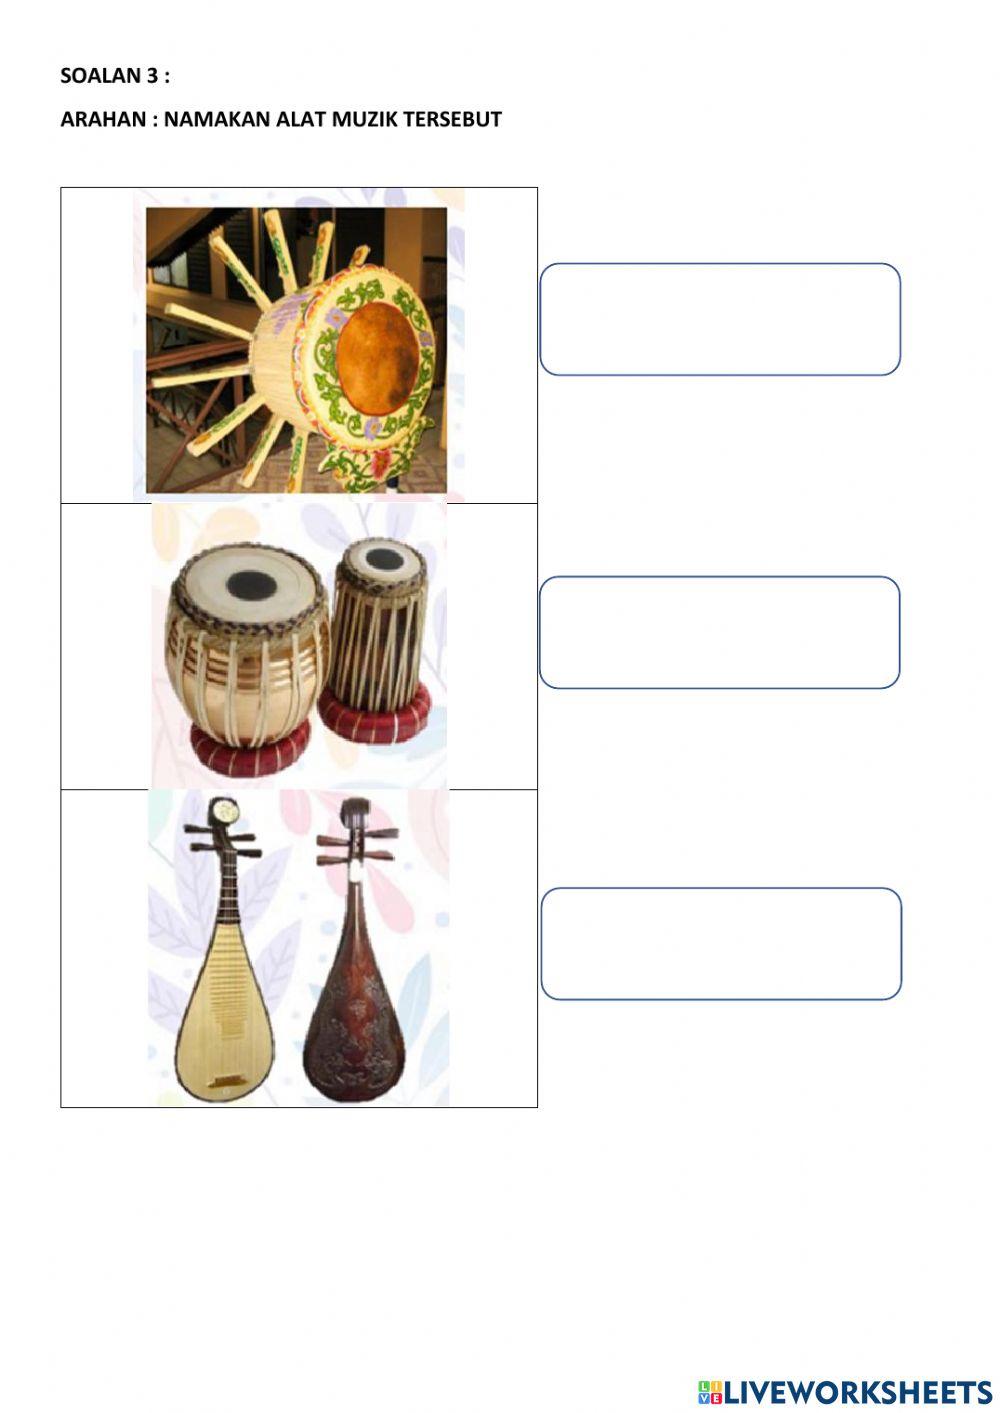 Aktiviti 2 : kebudayaan alat muzik tradisional